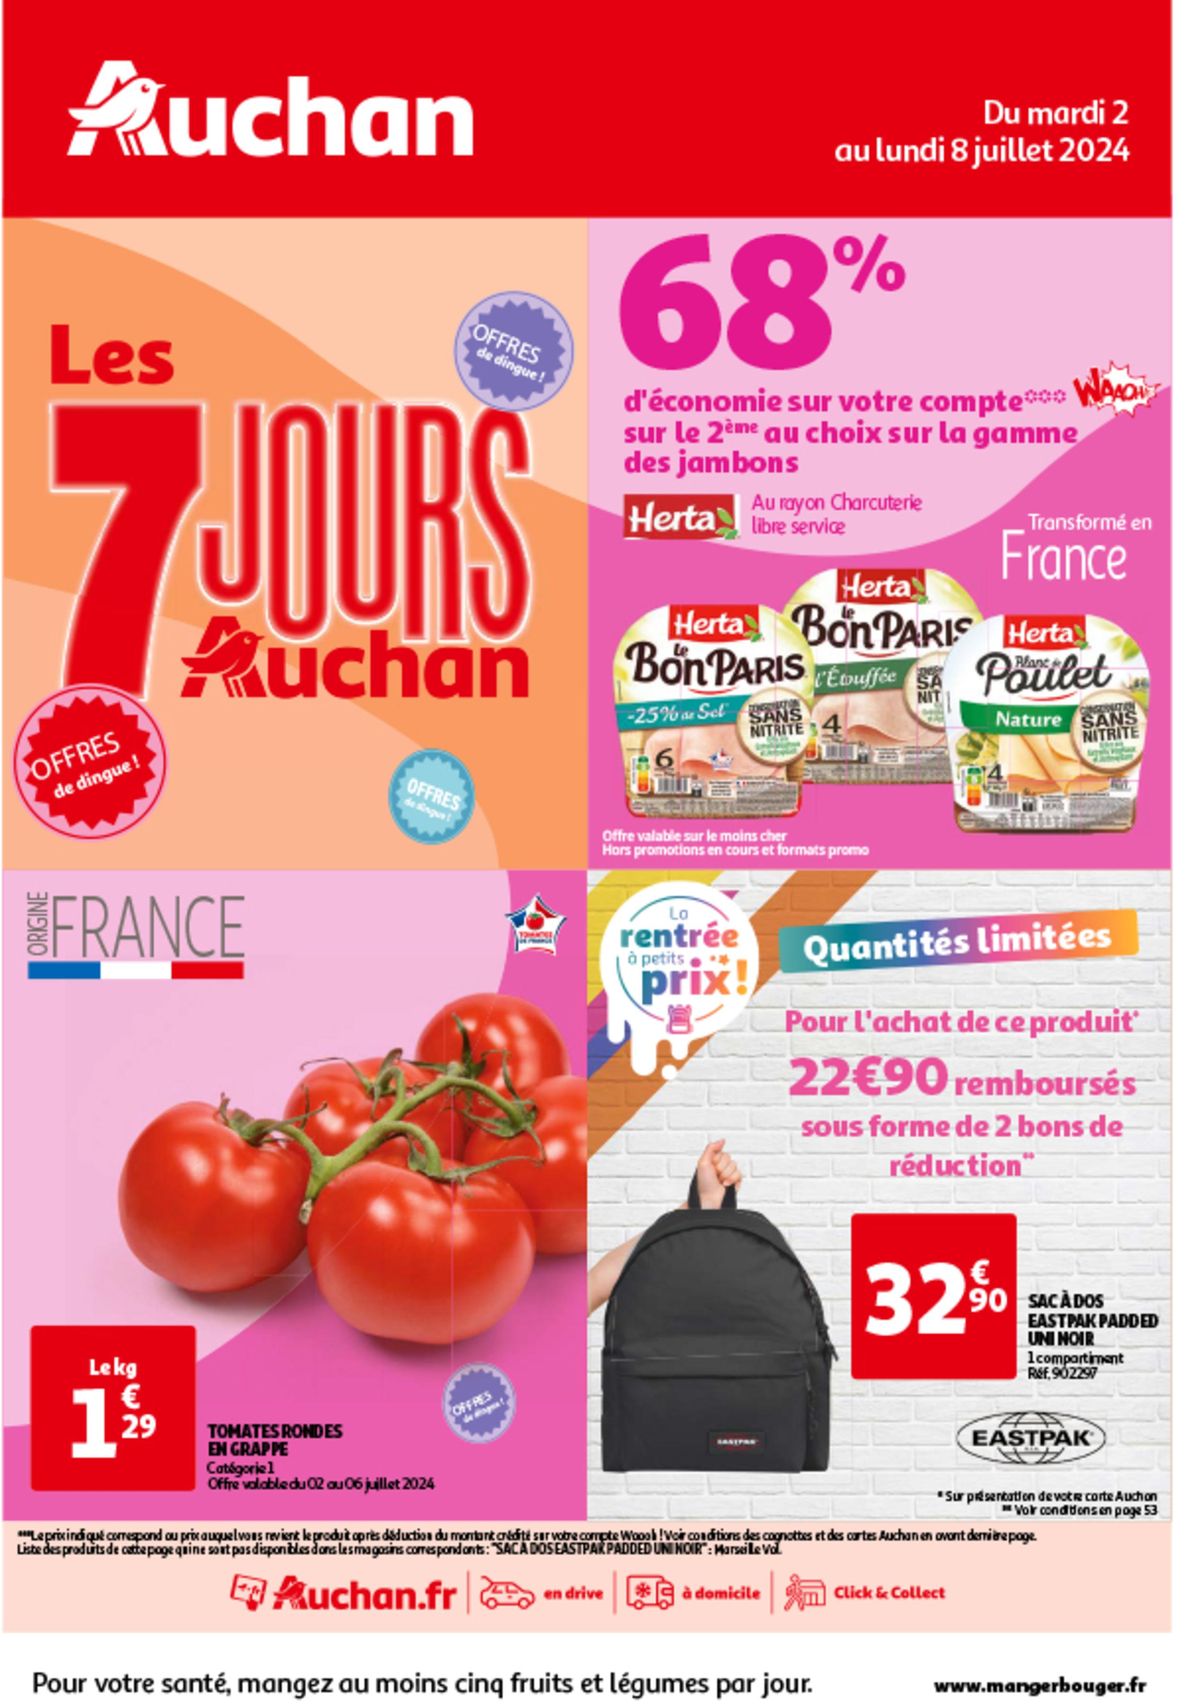 Catalogue Les 7 jours Auchan, c'est maintenant !, page 00001